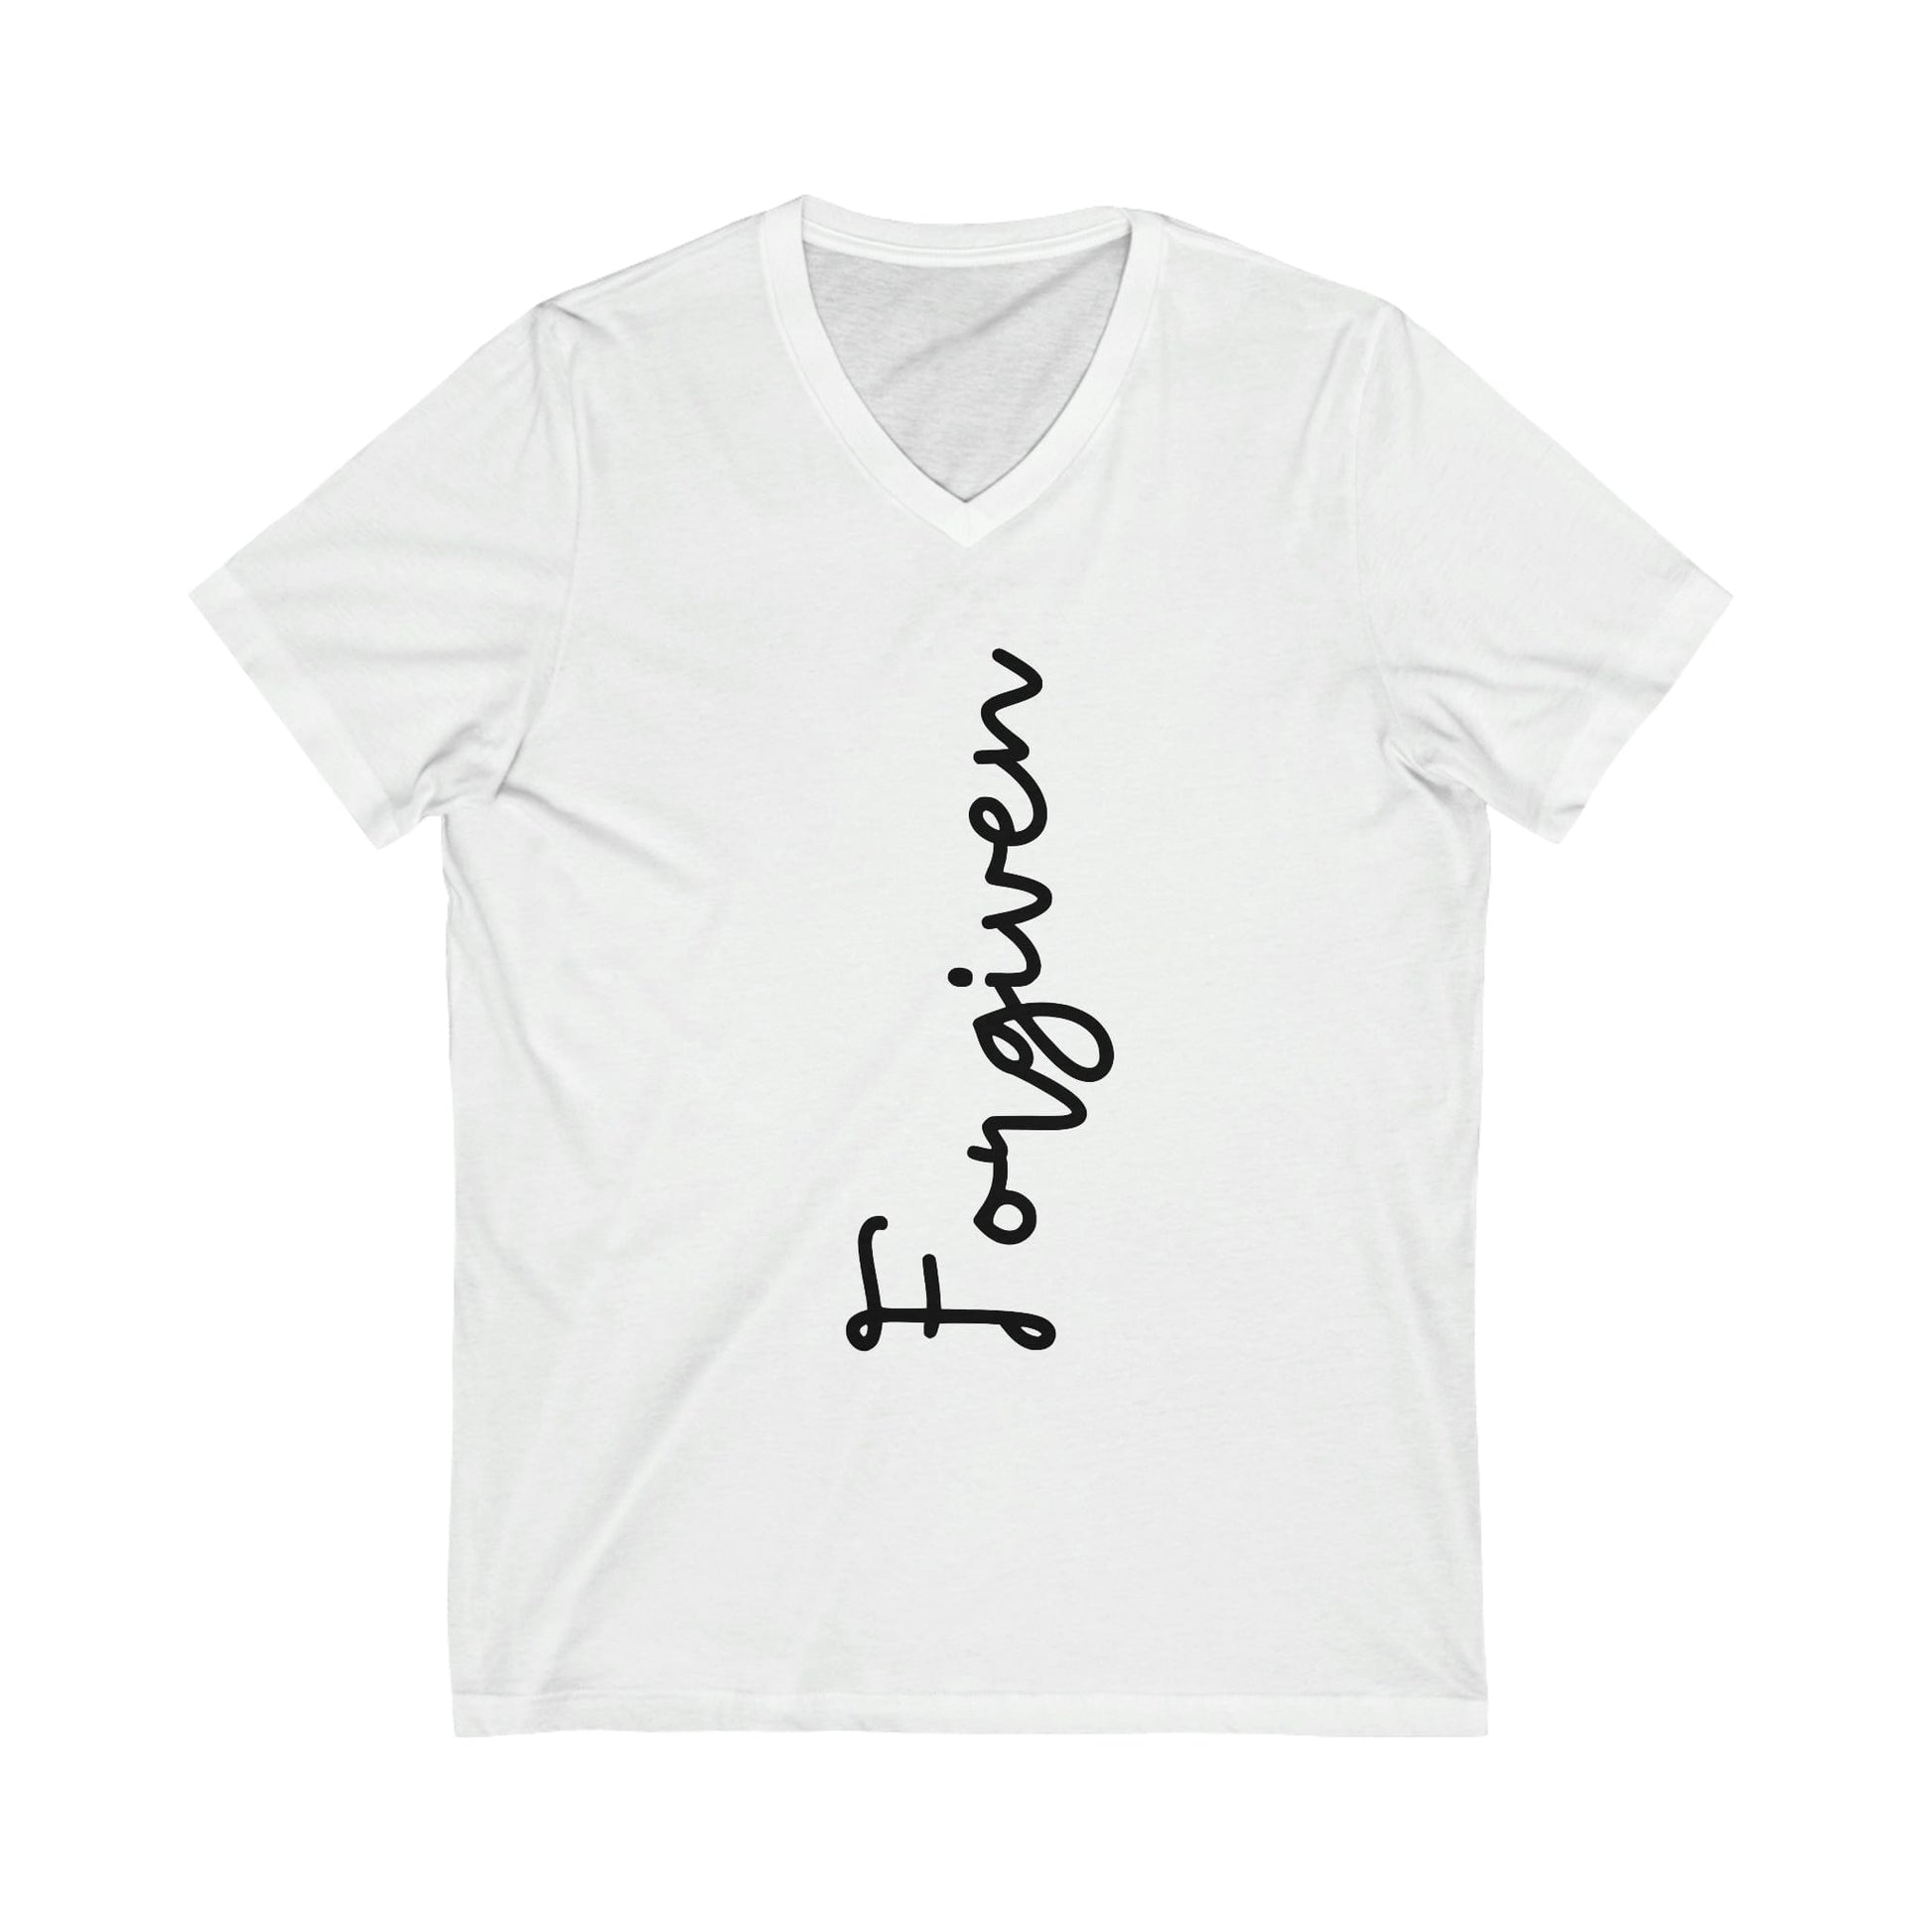 Forgiven T-Shirt, Women's Empowerment Tee, Christian Tee, Faith Apparel, Faith-Based Apparel, Christian Apparel